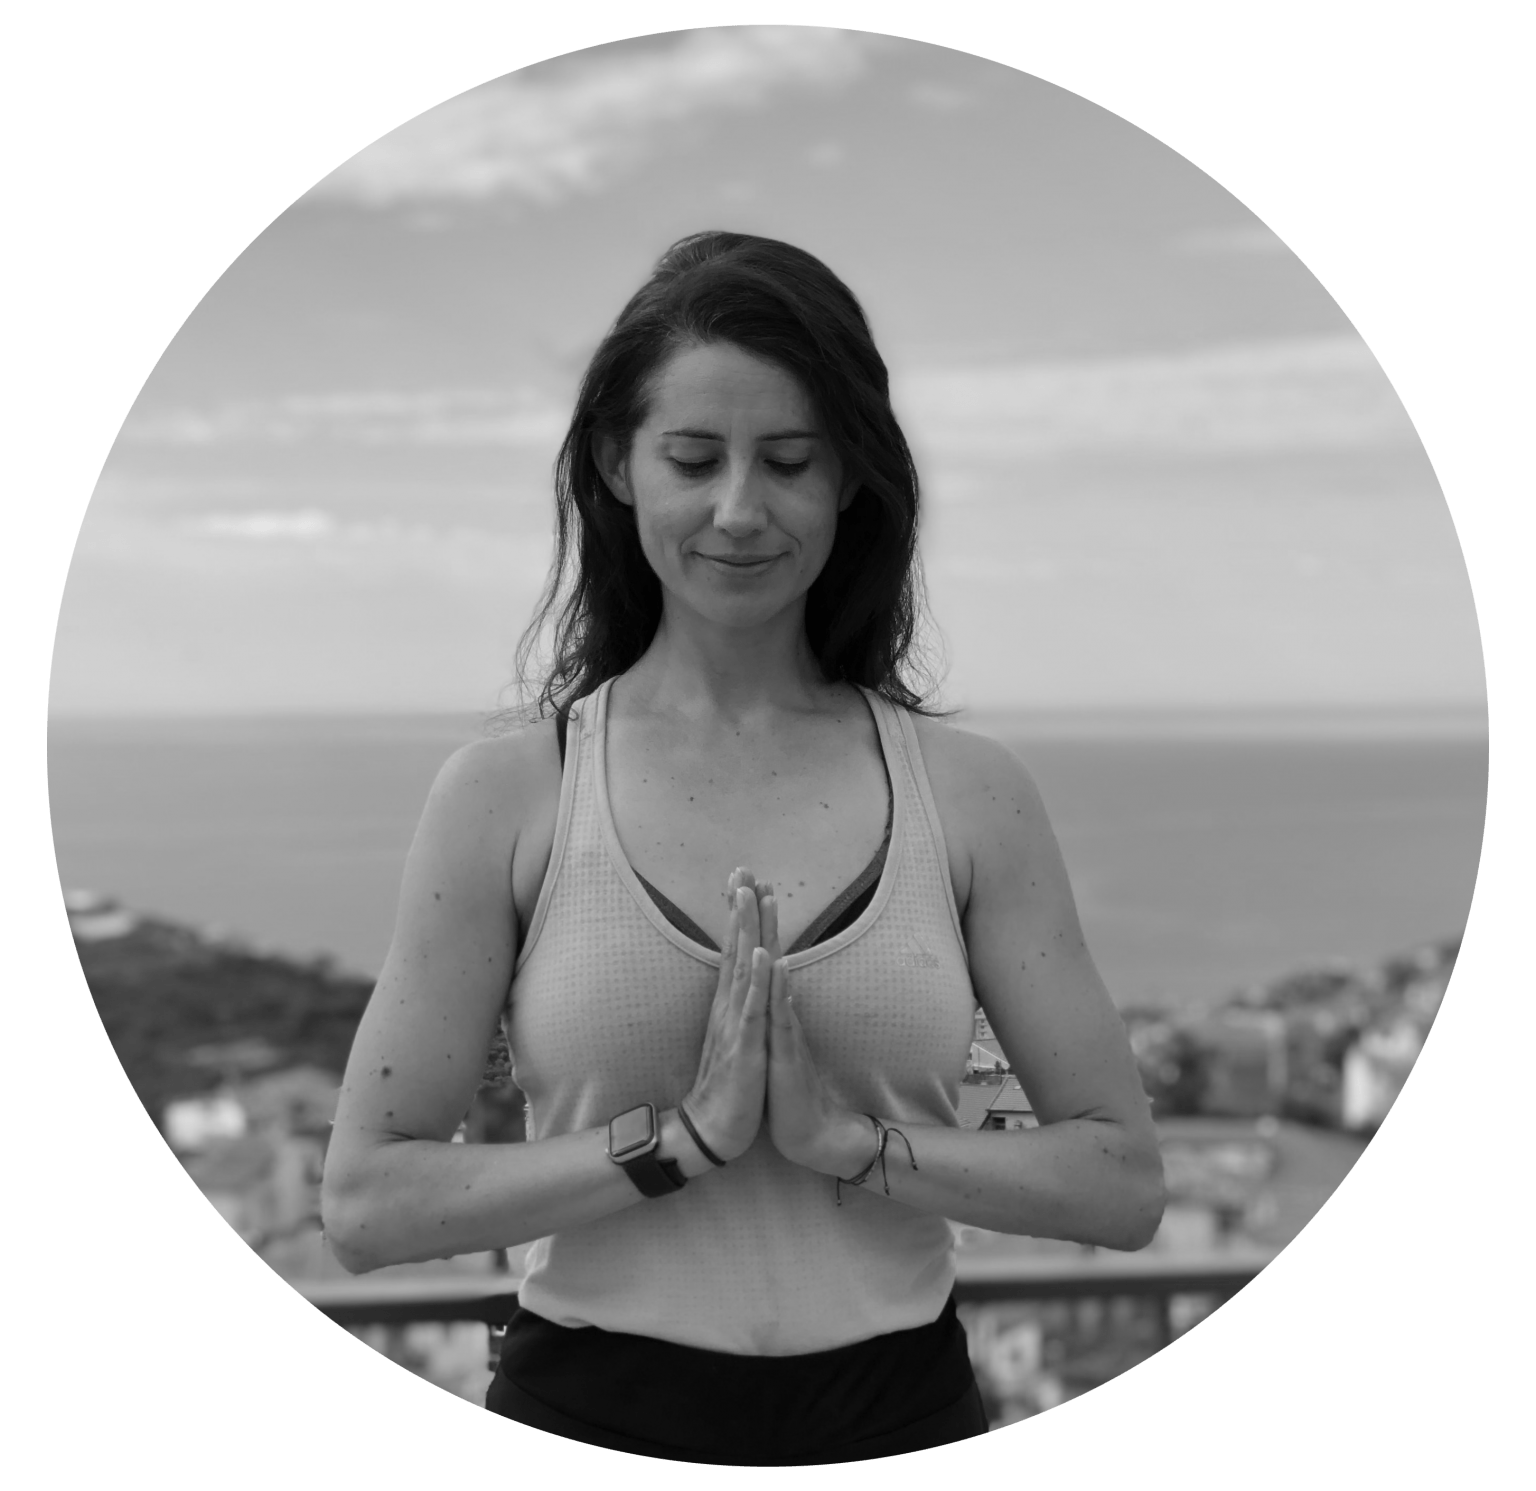 Une photo en noir et blanc d’une femme dans une pose de yoga